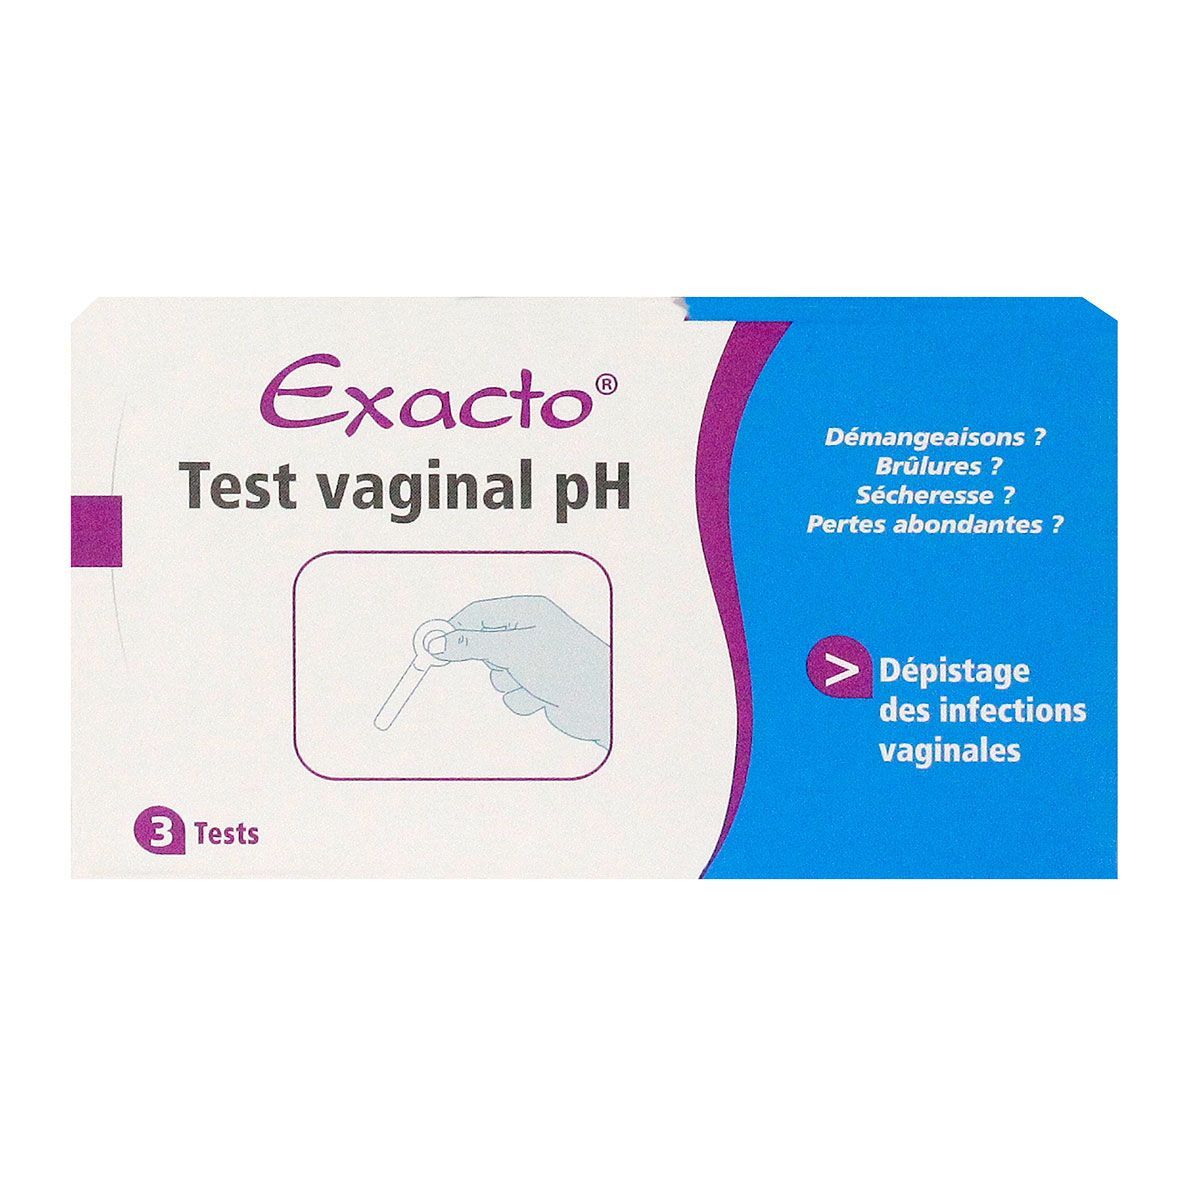 exacto test vaginal ph est un test rapide et simple qui permet de dépister  les infections vaginales